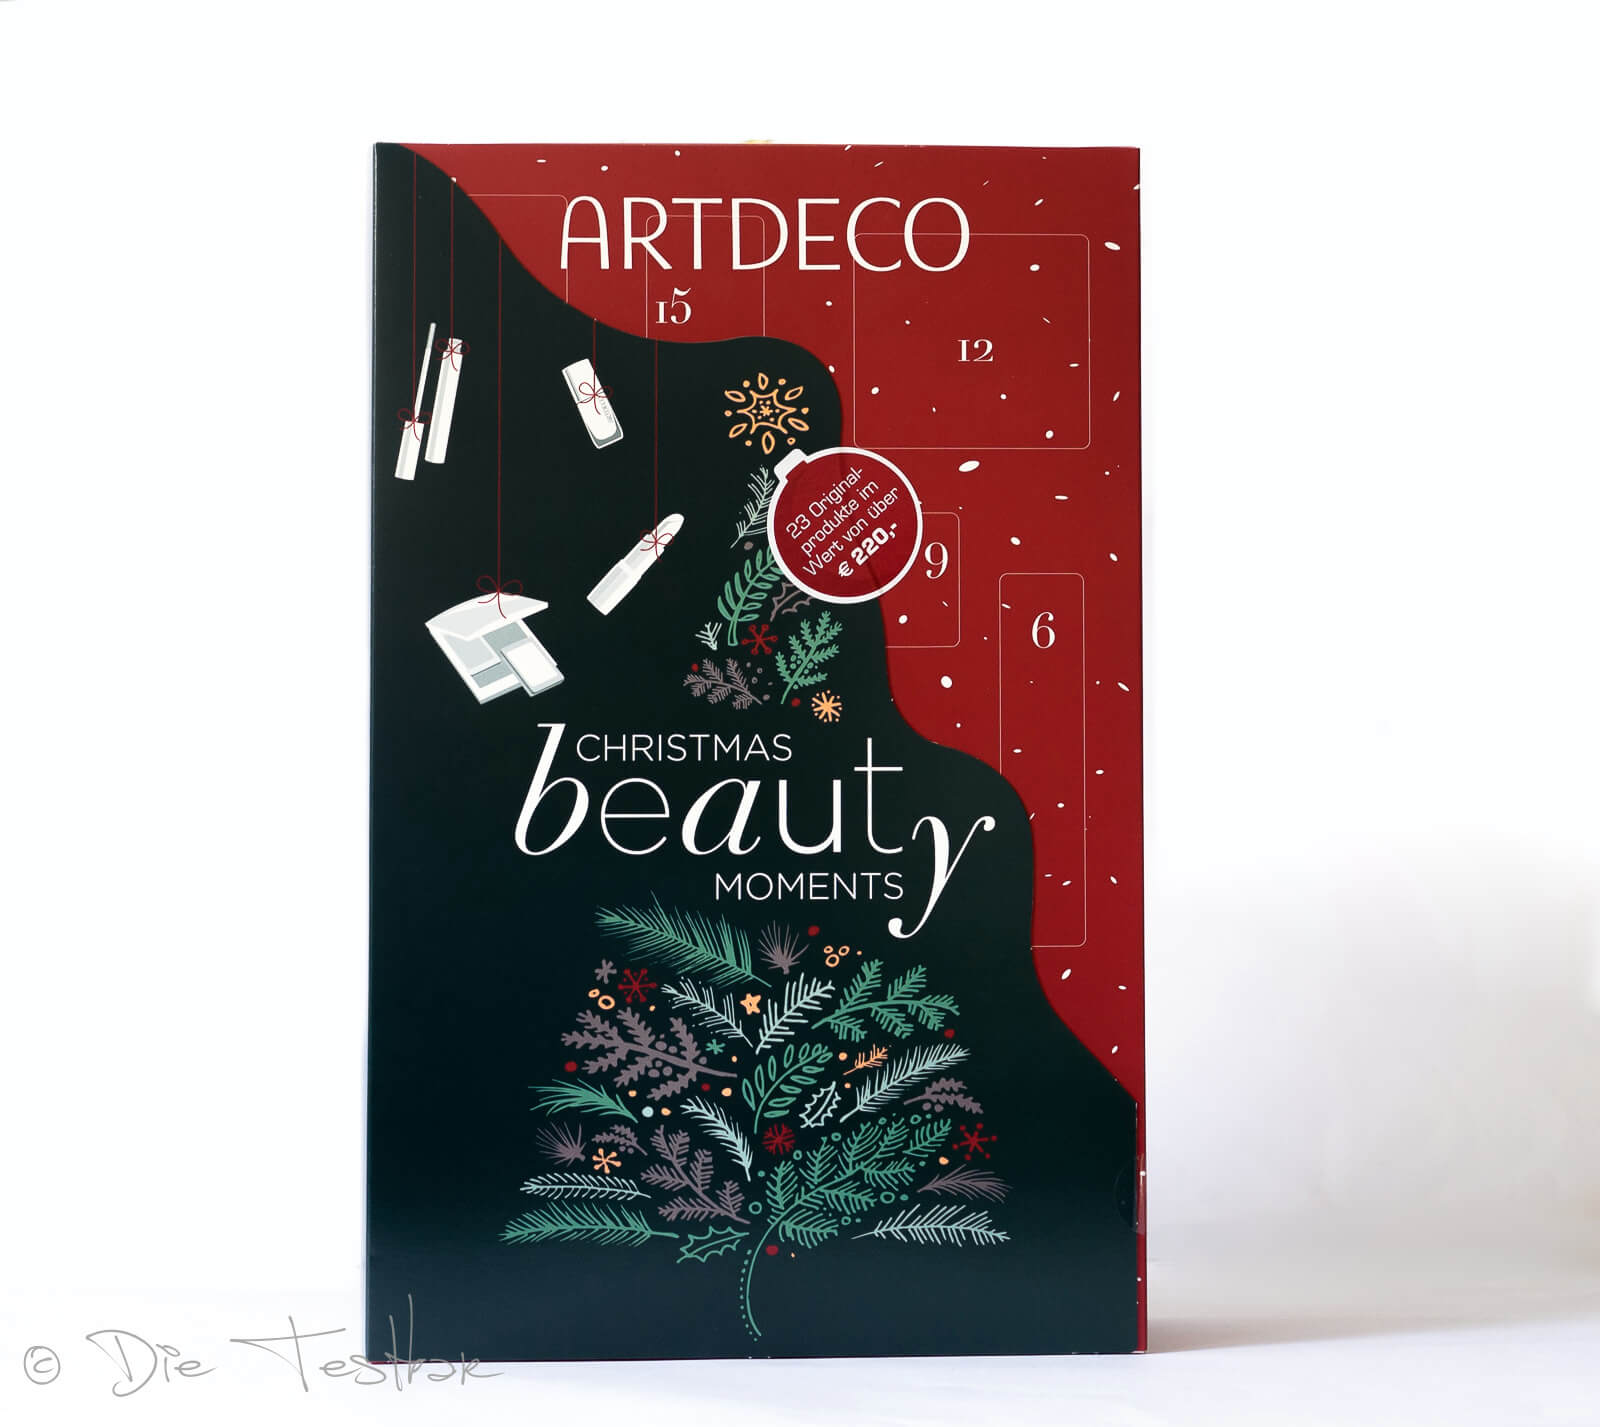 Gewinnspiel – 2 x 1 Limitierter Beauty Adventskalender 2021 von Artdeco zu gewinnen 1